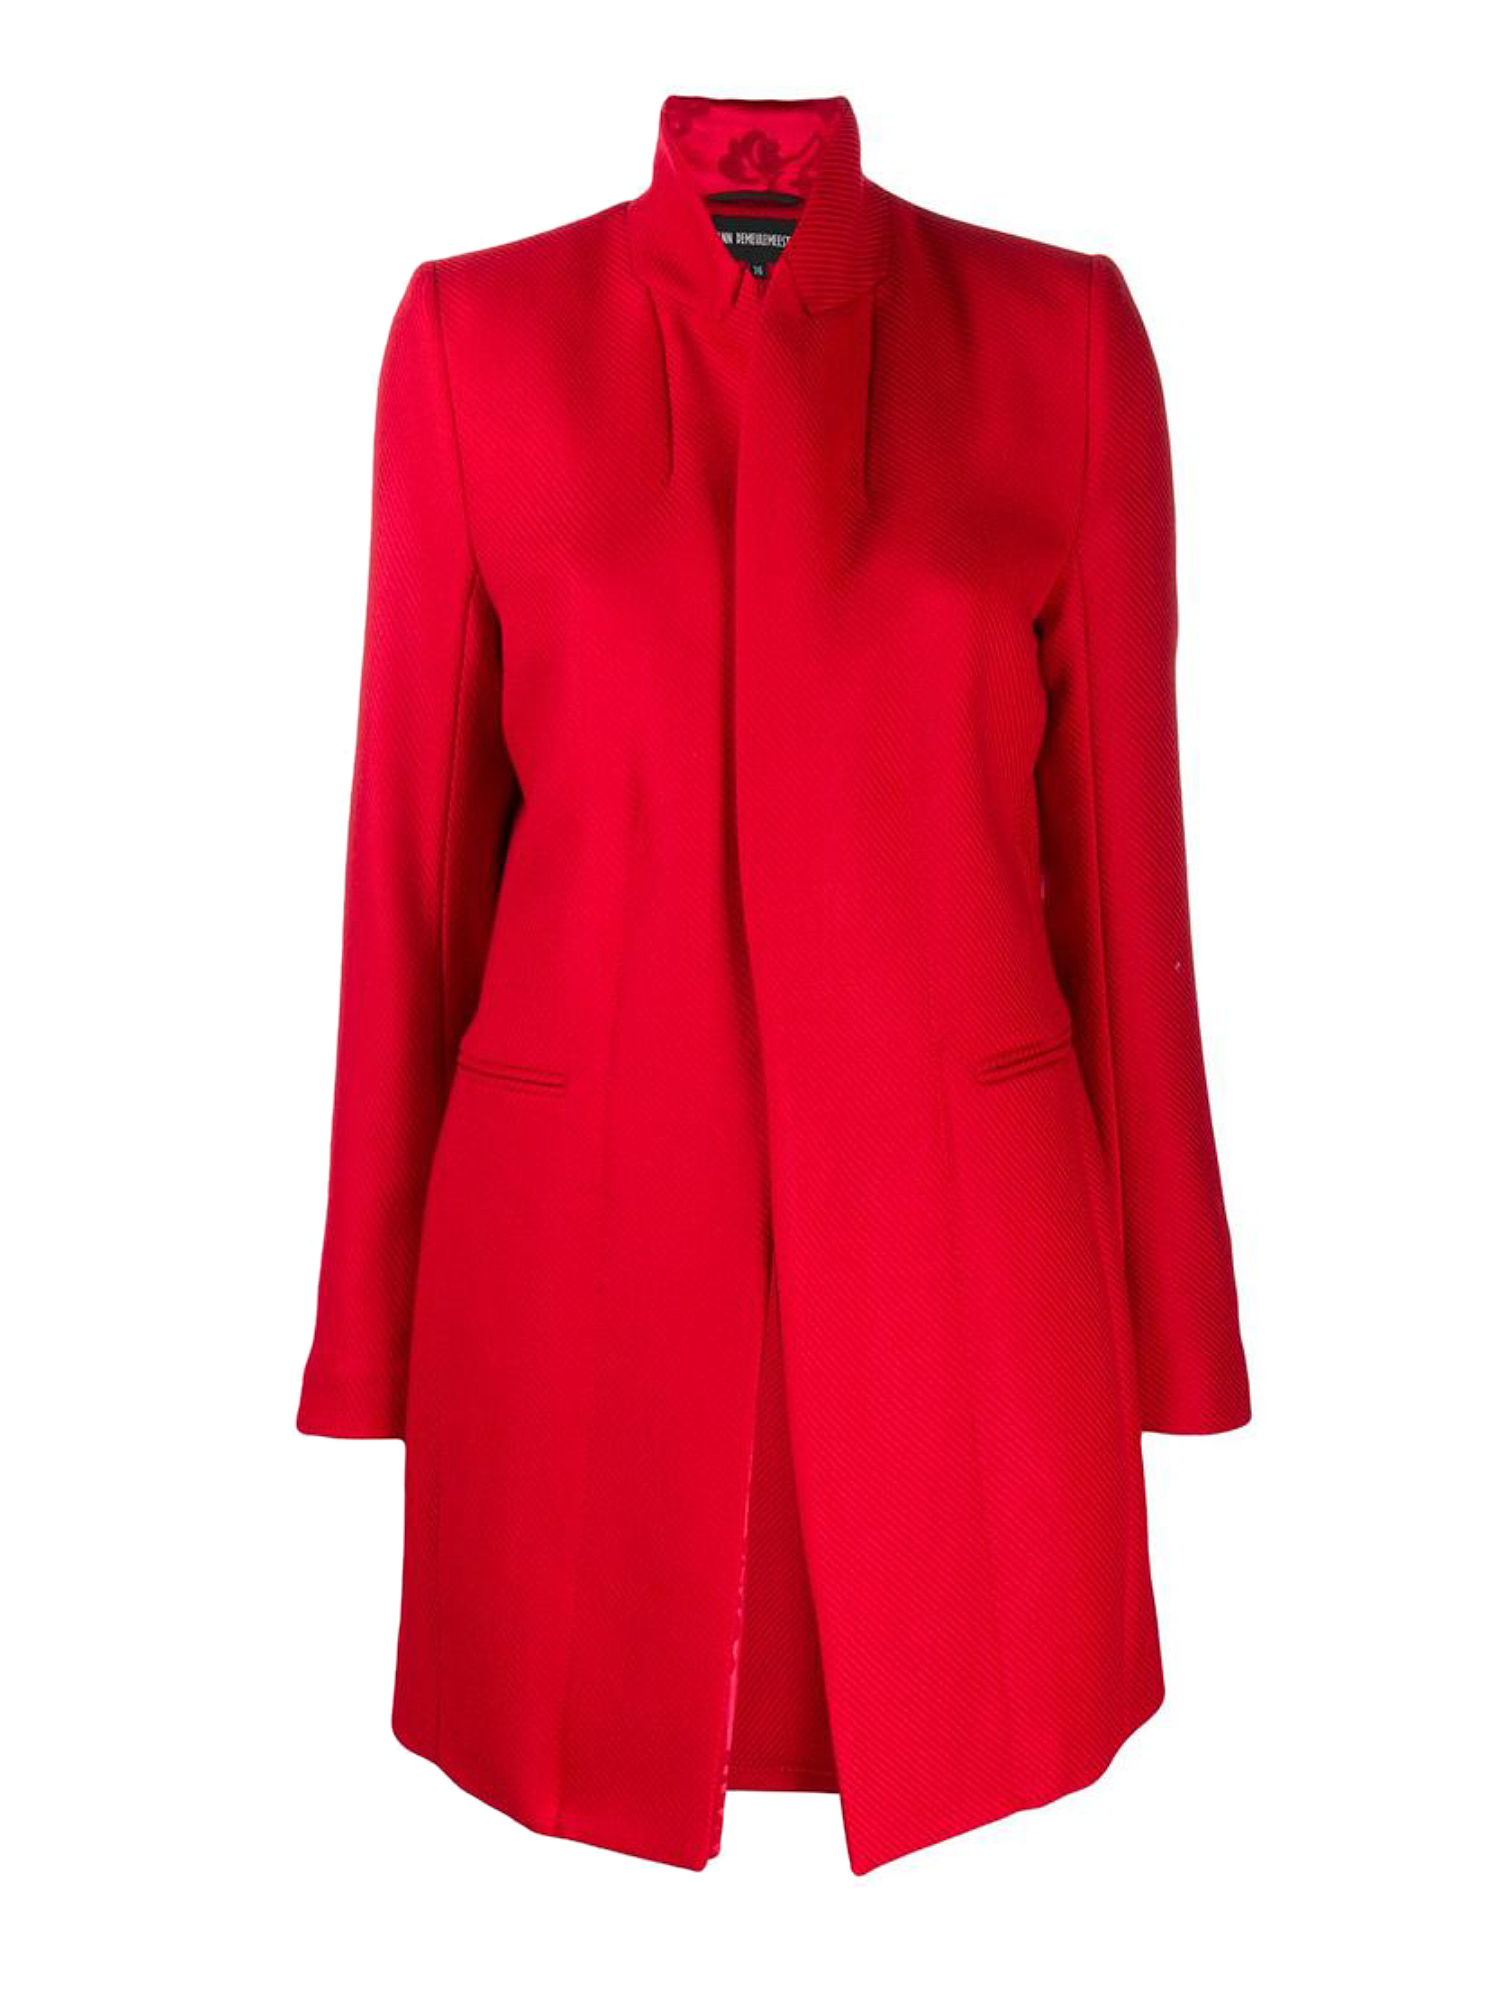 Ann Demeulemesteer Outwear In Red